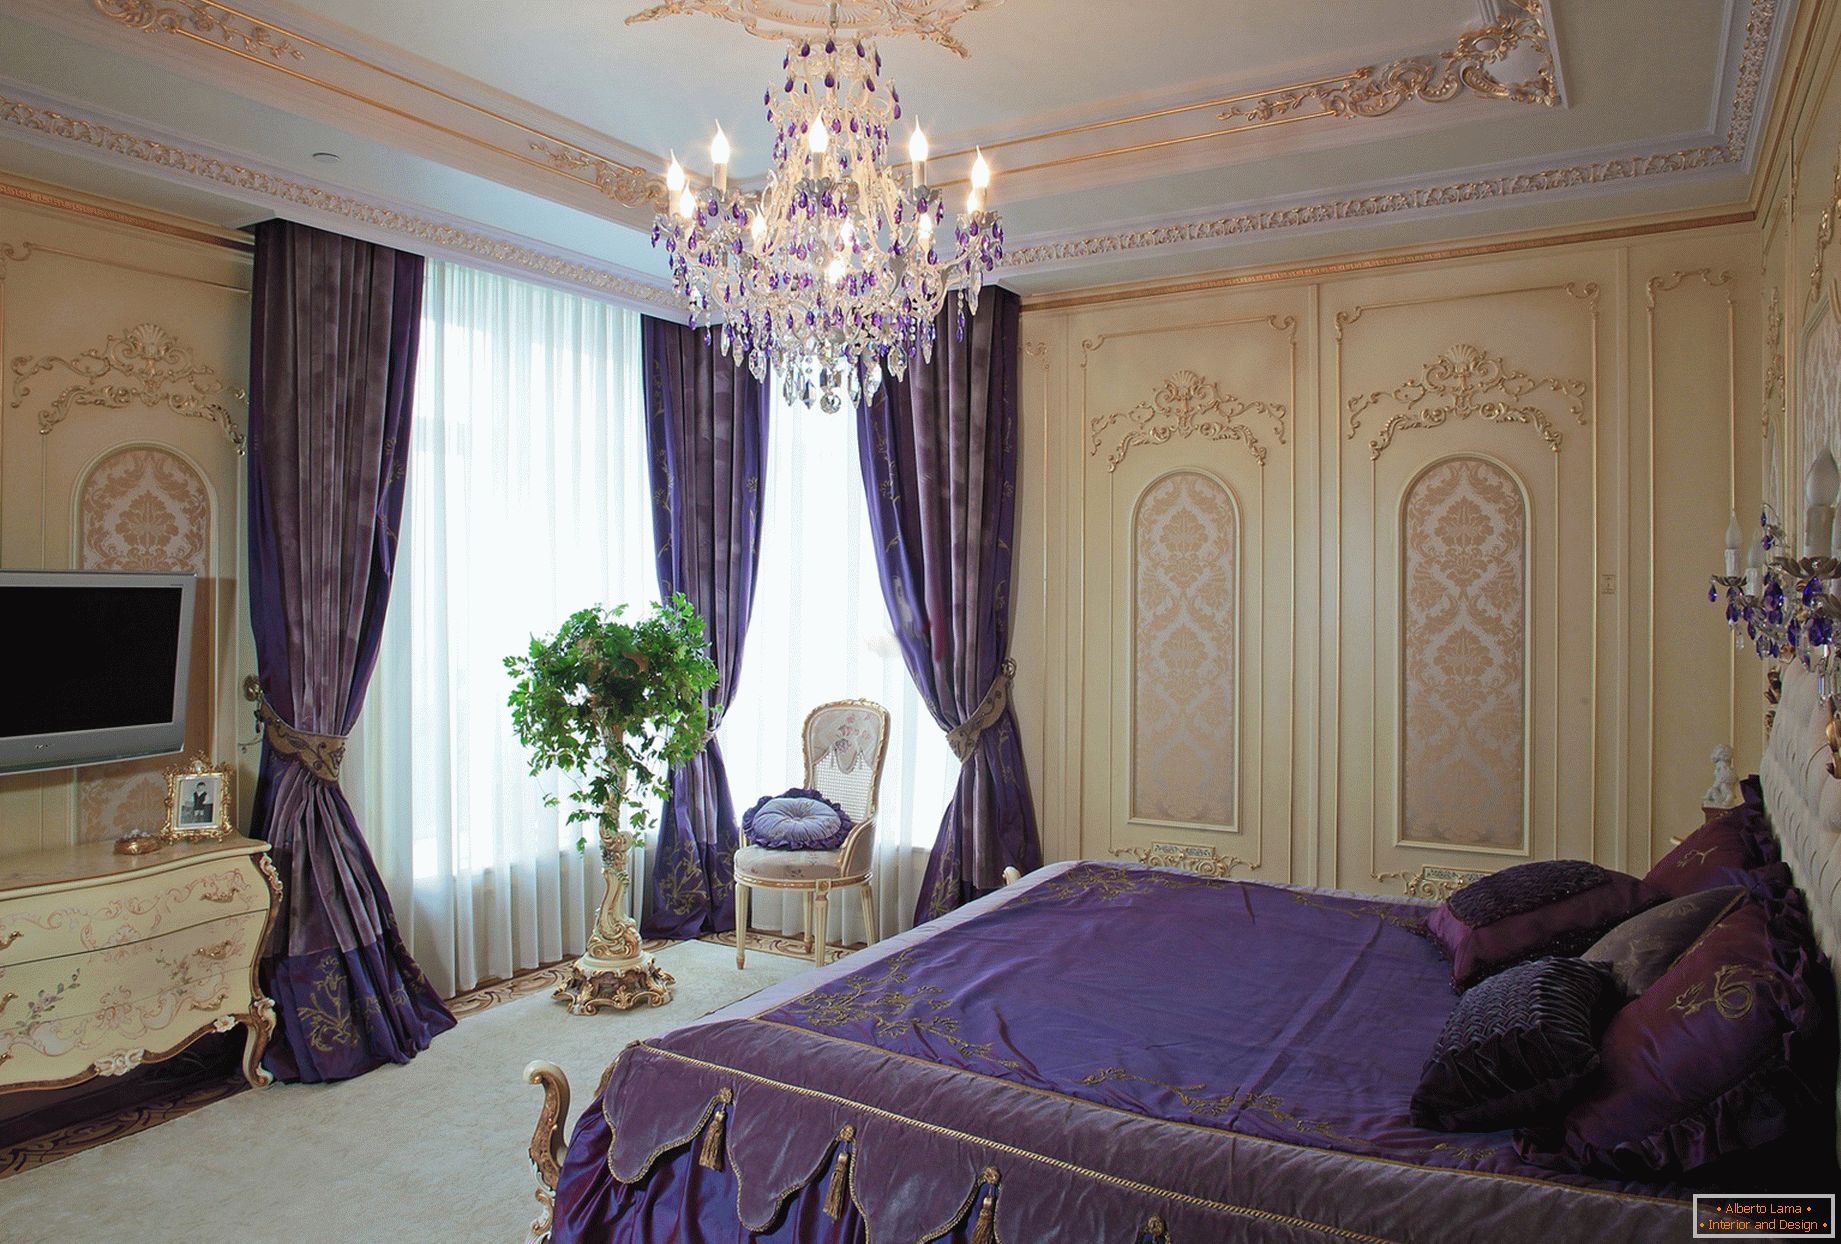 Stilvolles Schlafzimmer im barocken Stil. Ein dezentes Designkonzept - dunkelviolette Vorhänge werden mit farblich abgestimmter Bettwäsche kombiniert.